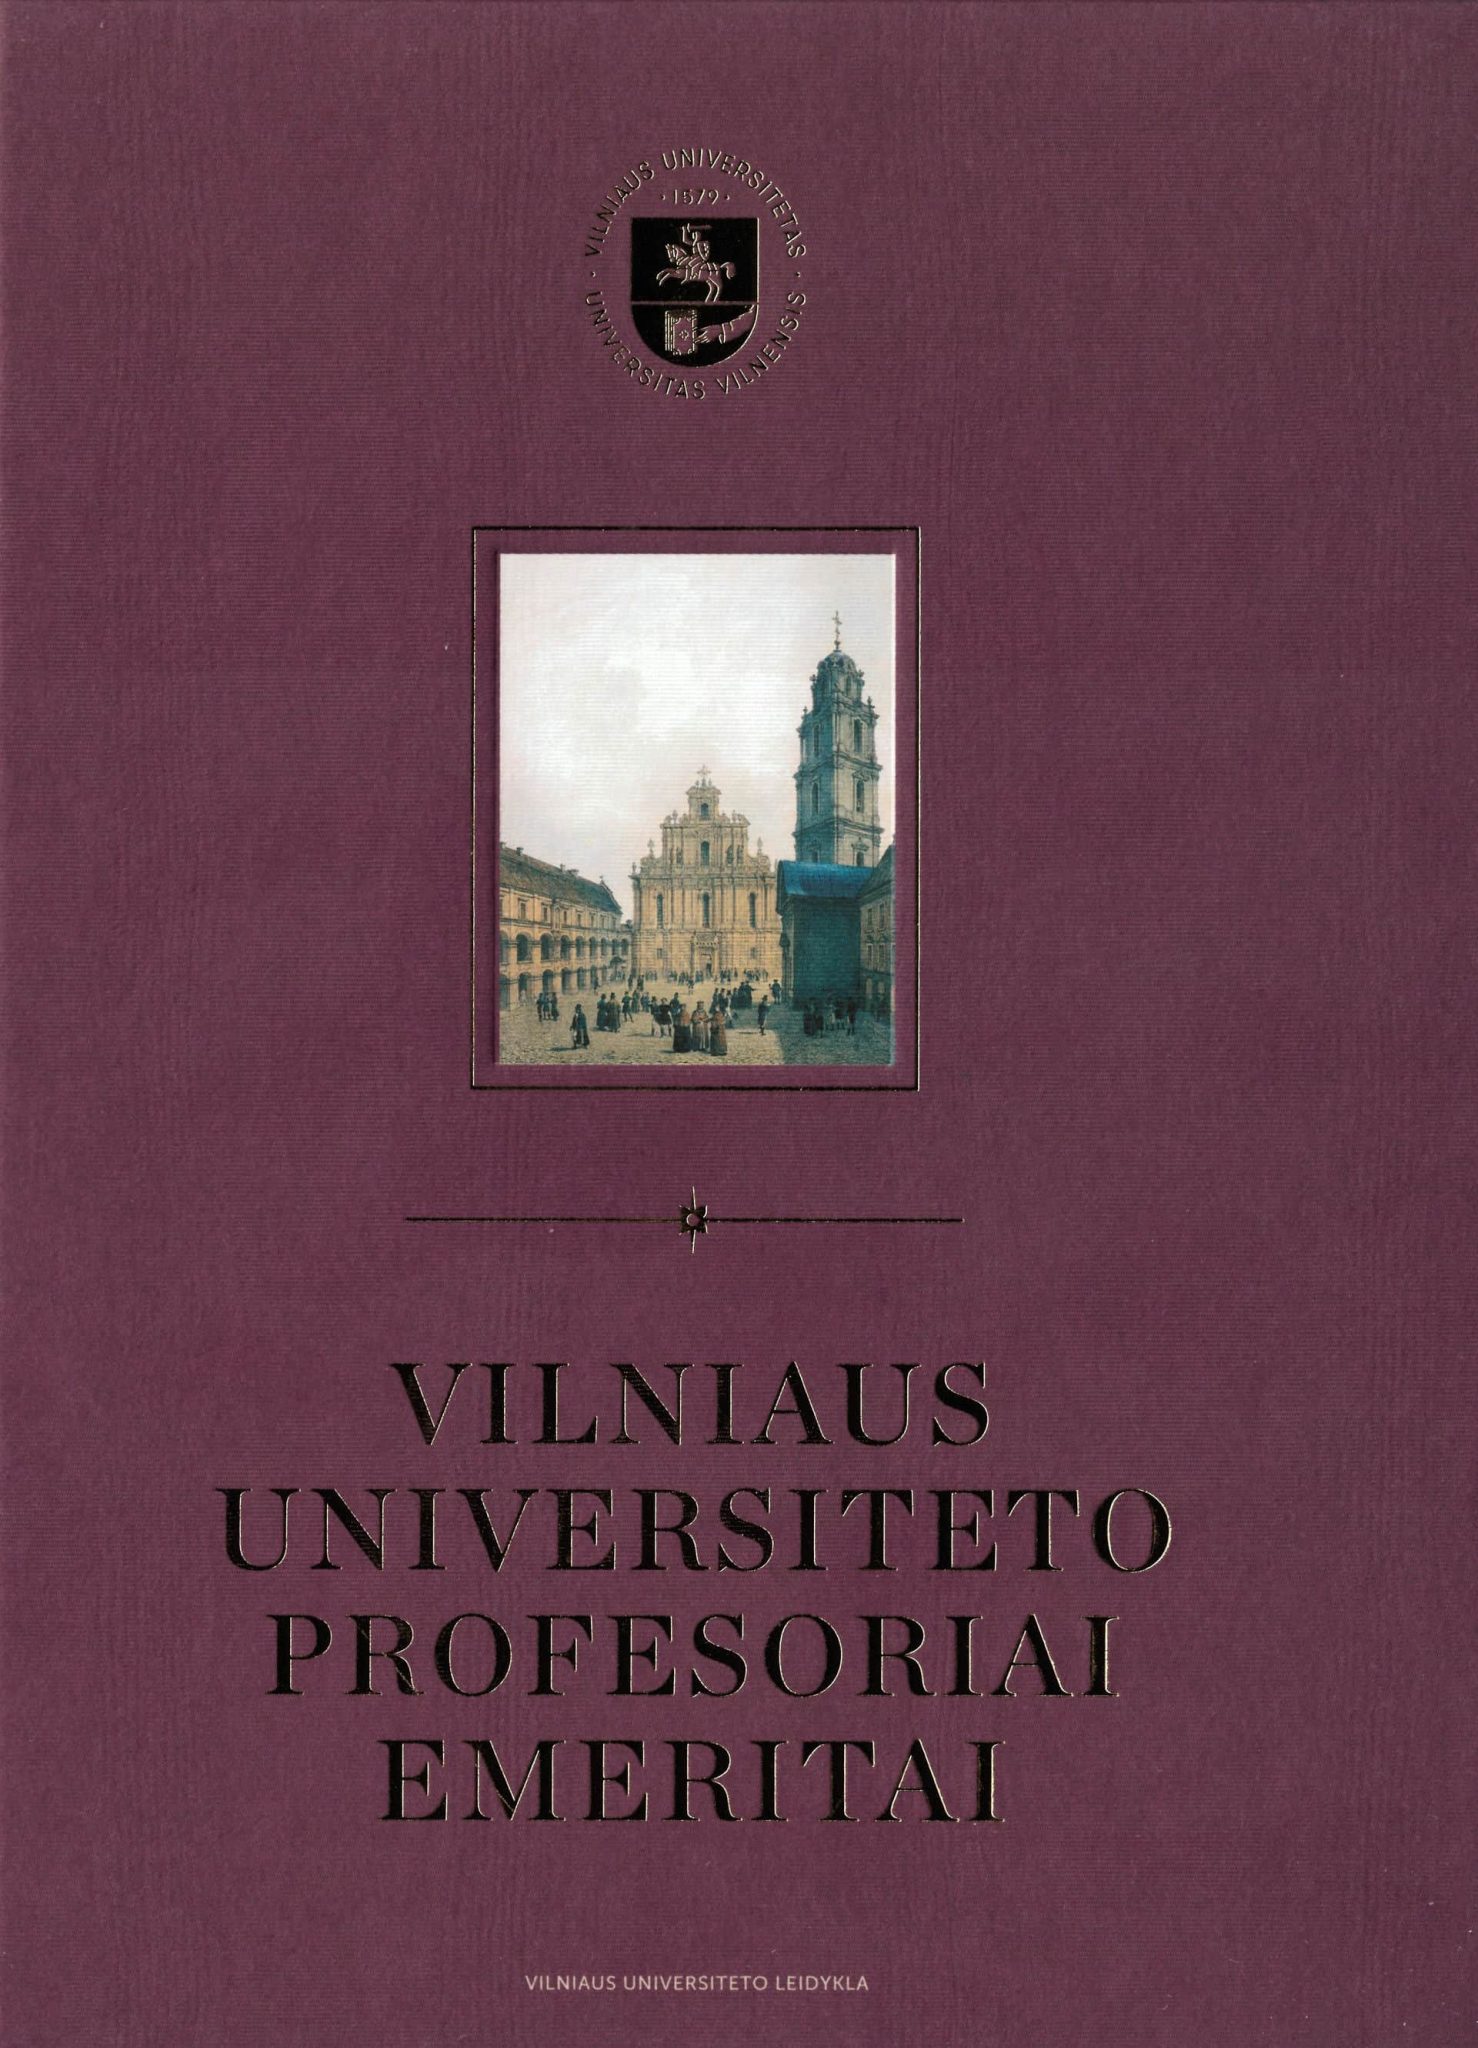 Vilniaus universiteto profesoriai emeritai viršelis